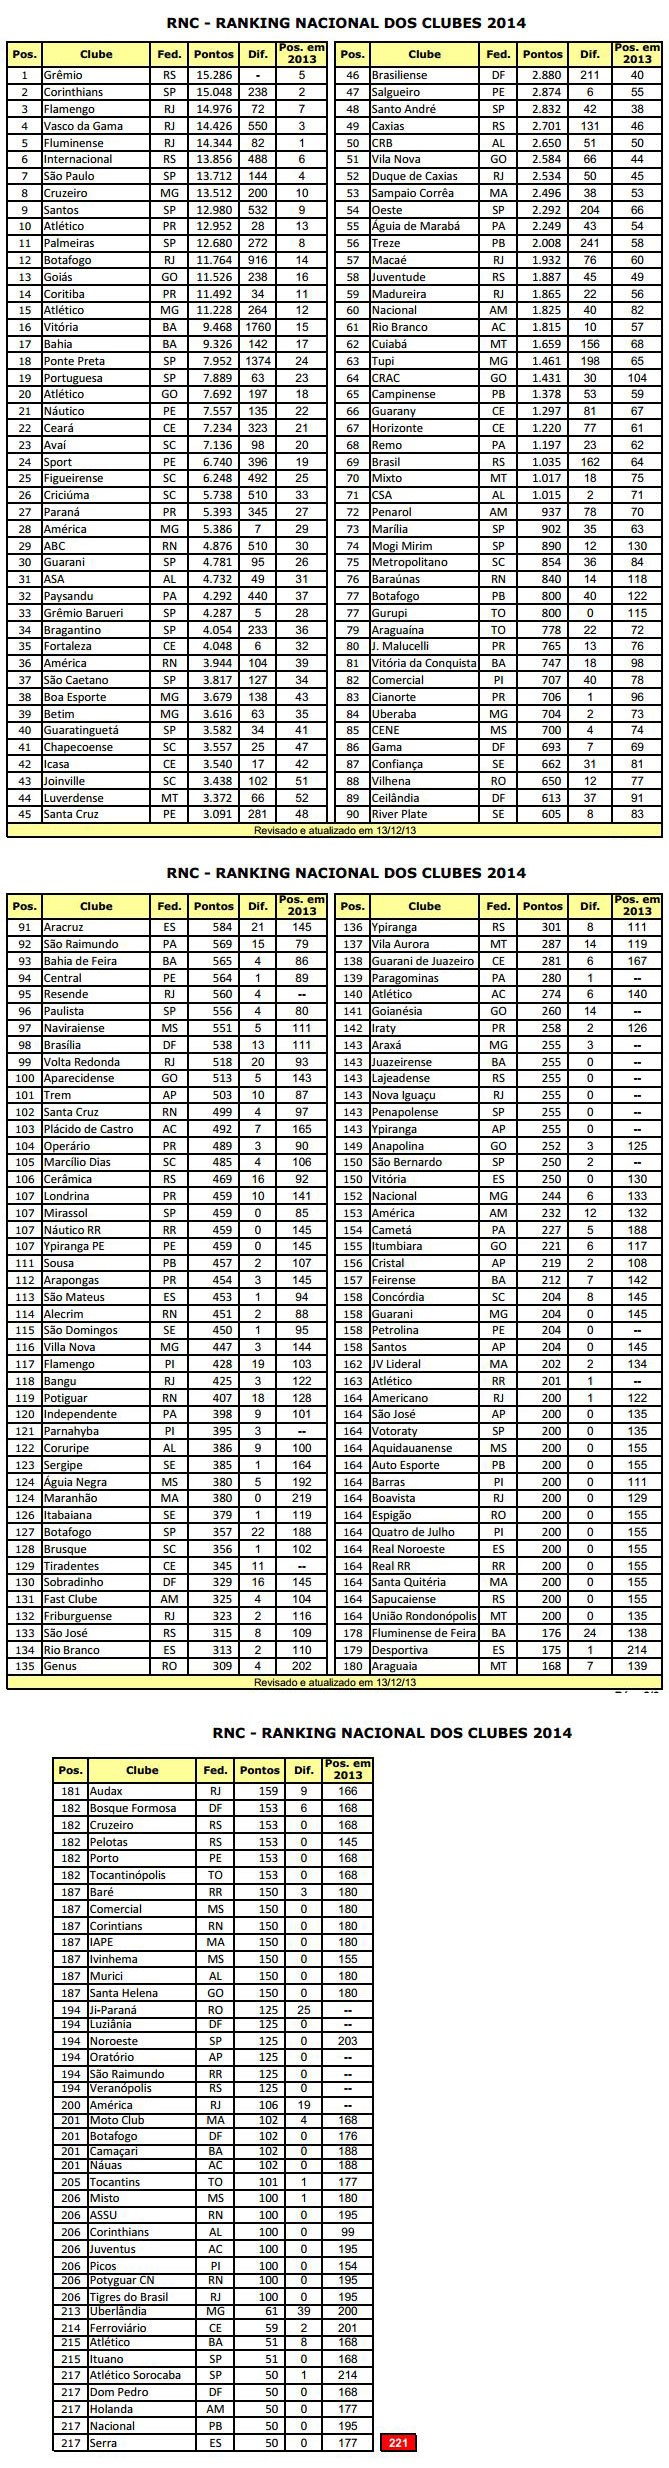 Ranking Nacional de clubes (Foto: Reprodução)